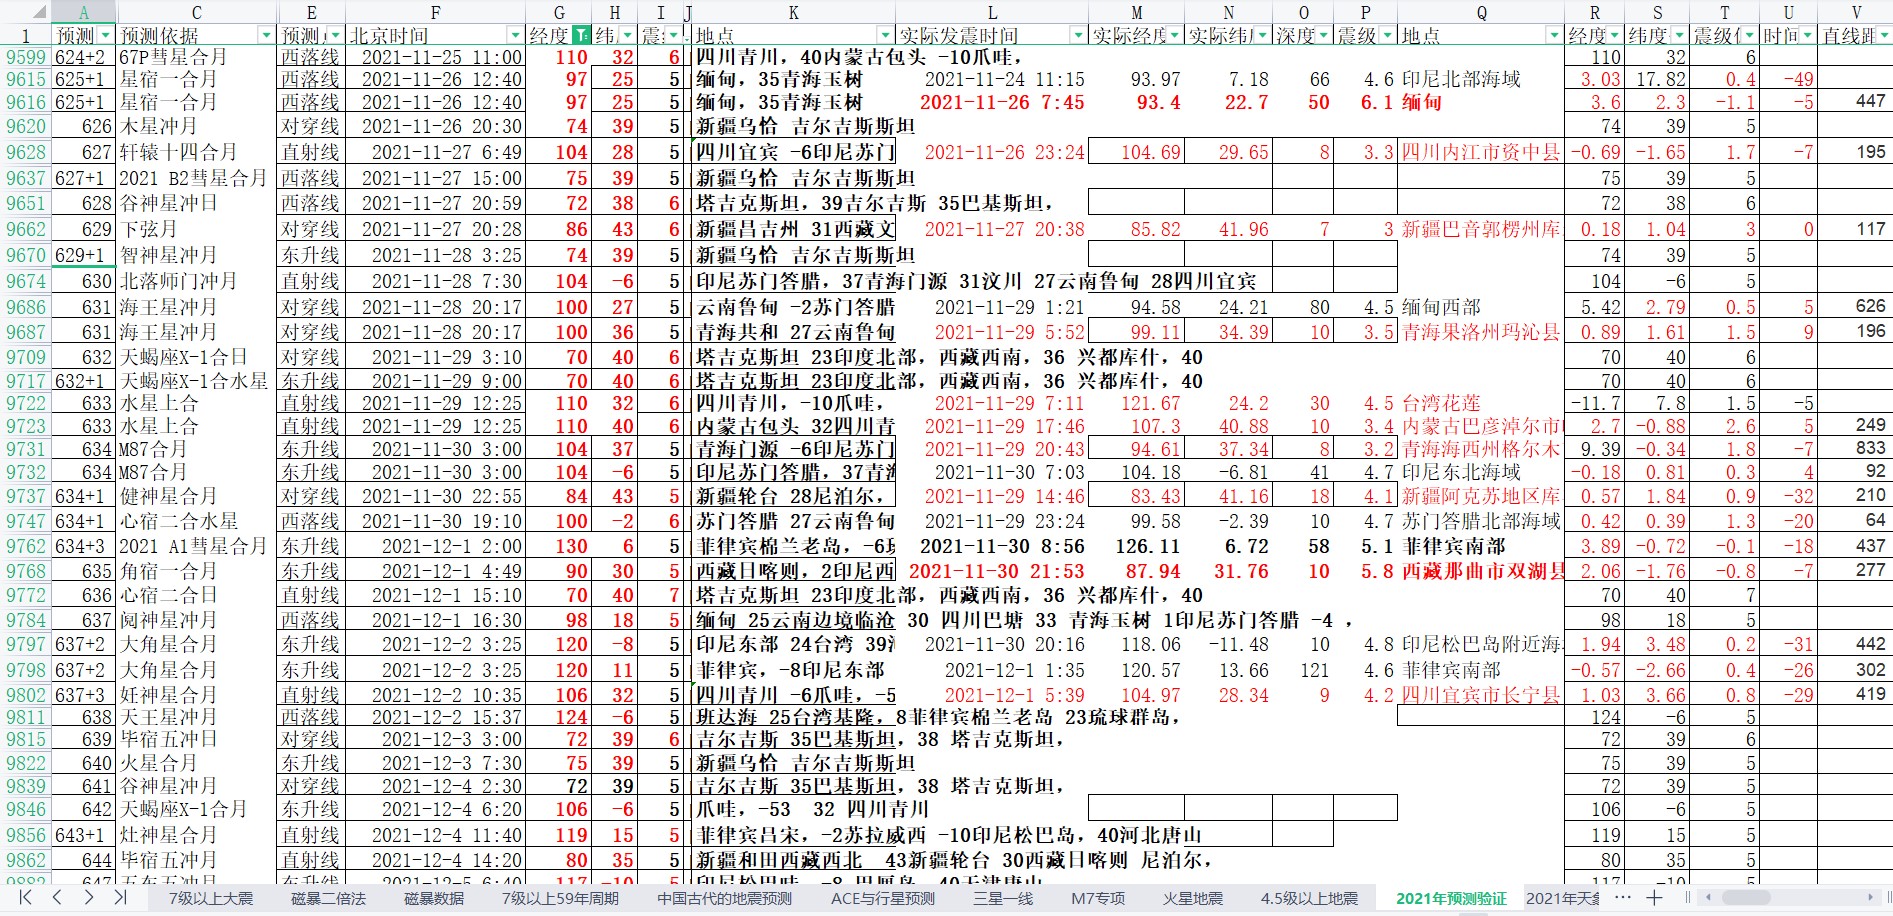 中国及周边区域地震预测验证2021年11月24-12月4日1.jpg